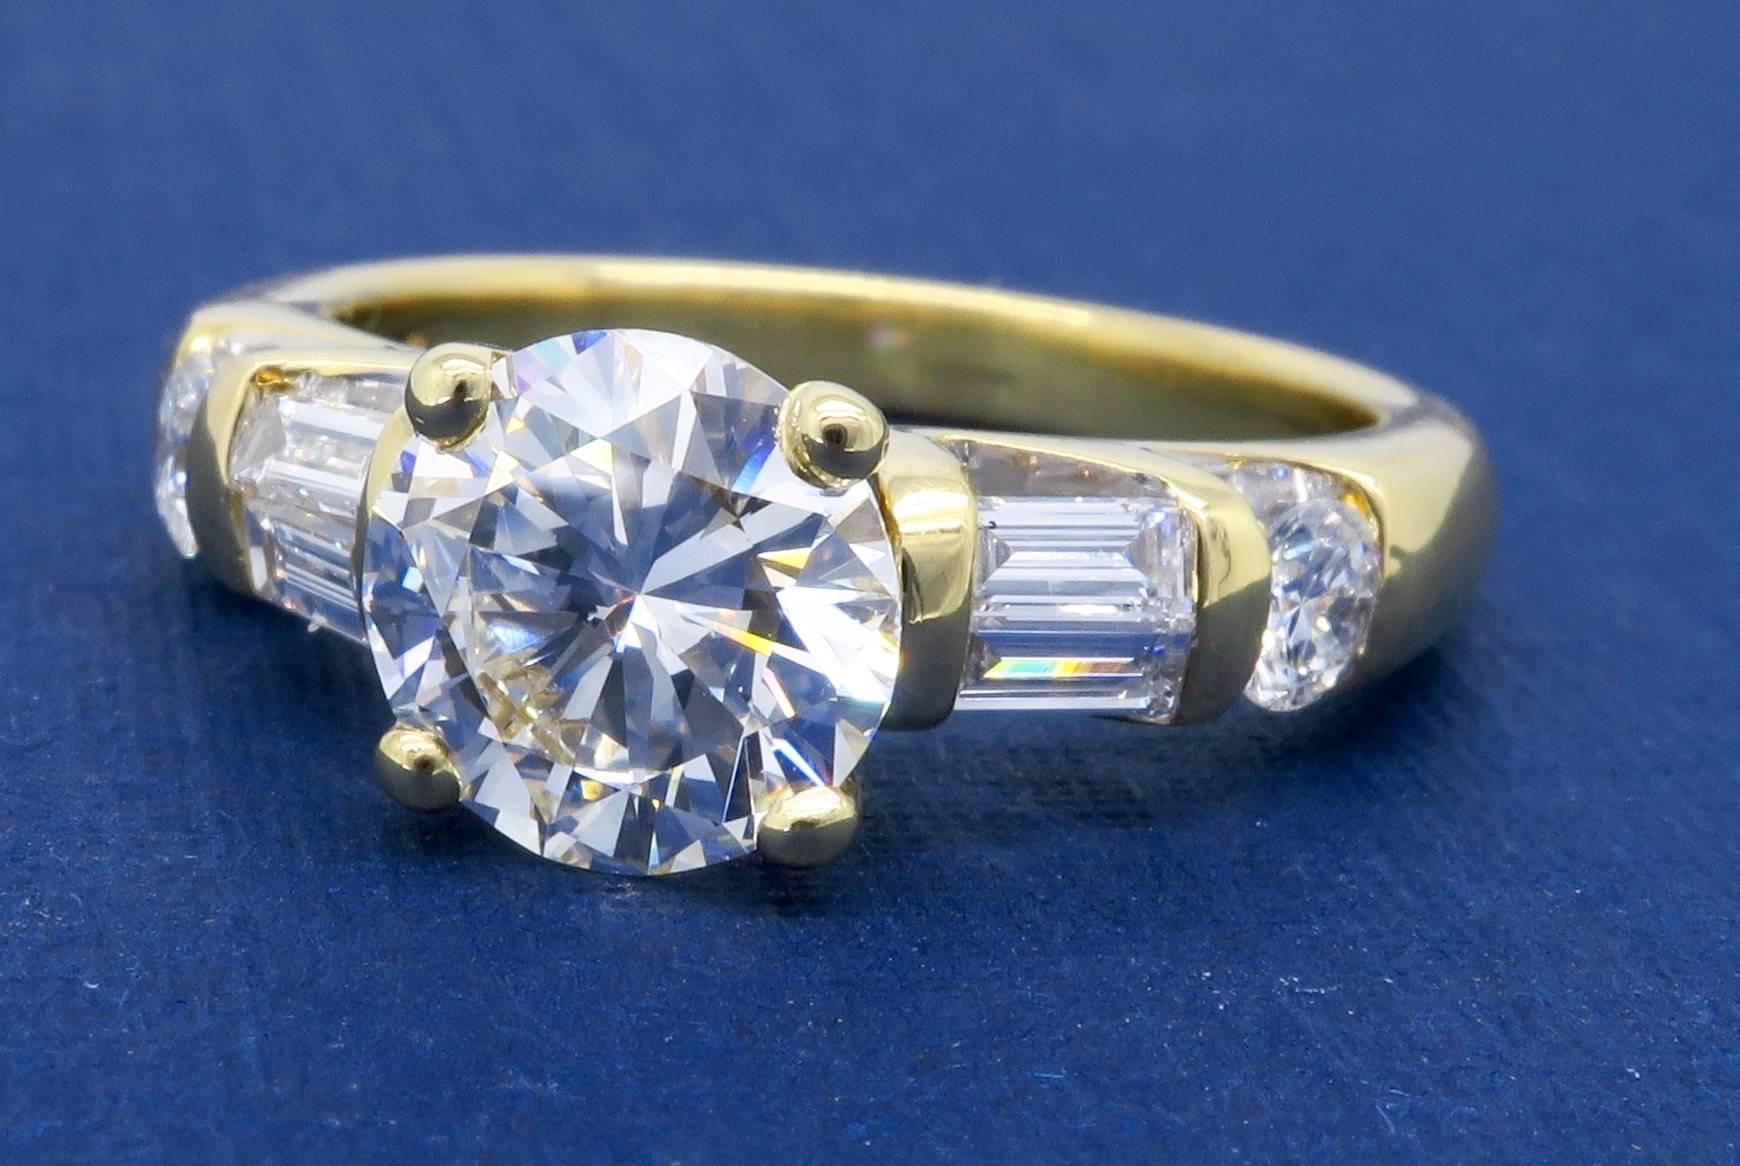 GIA Certified 1.66 Carat Diamond Engagement Ring in 18 Karat Yellow Gold 4